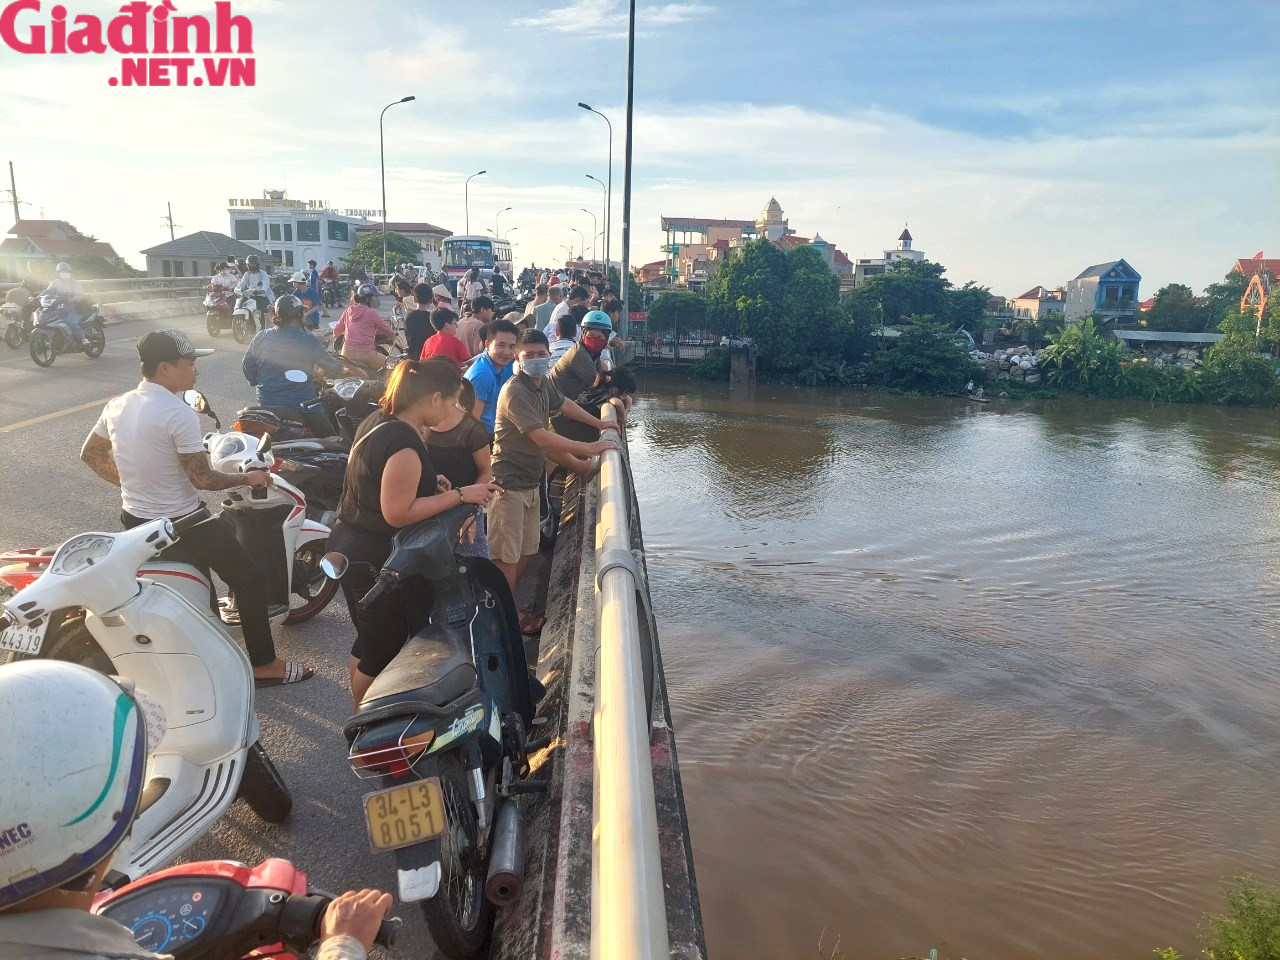 Hải Dương: Người đàn ông huyện Ninh Giang đi xe máy lên cầu Ràm bất ngờ nhảy xuống sông Cửu An - Ảnh 1.